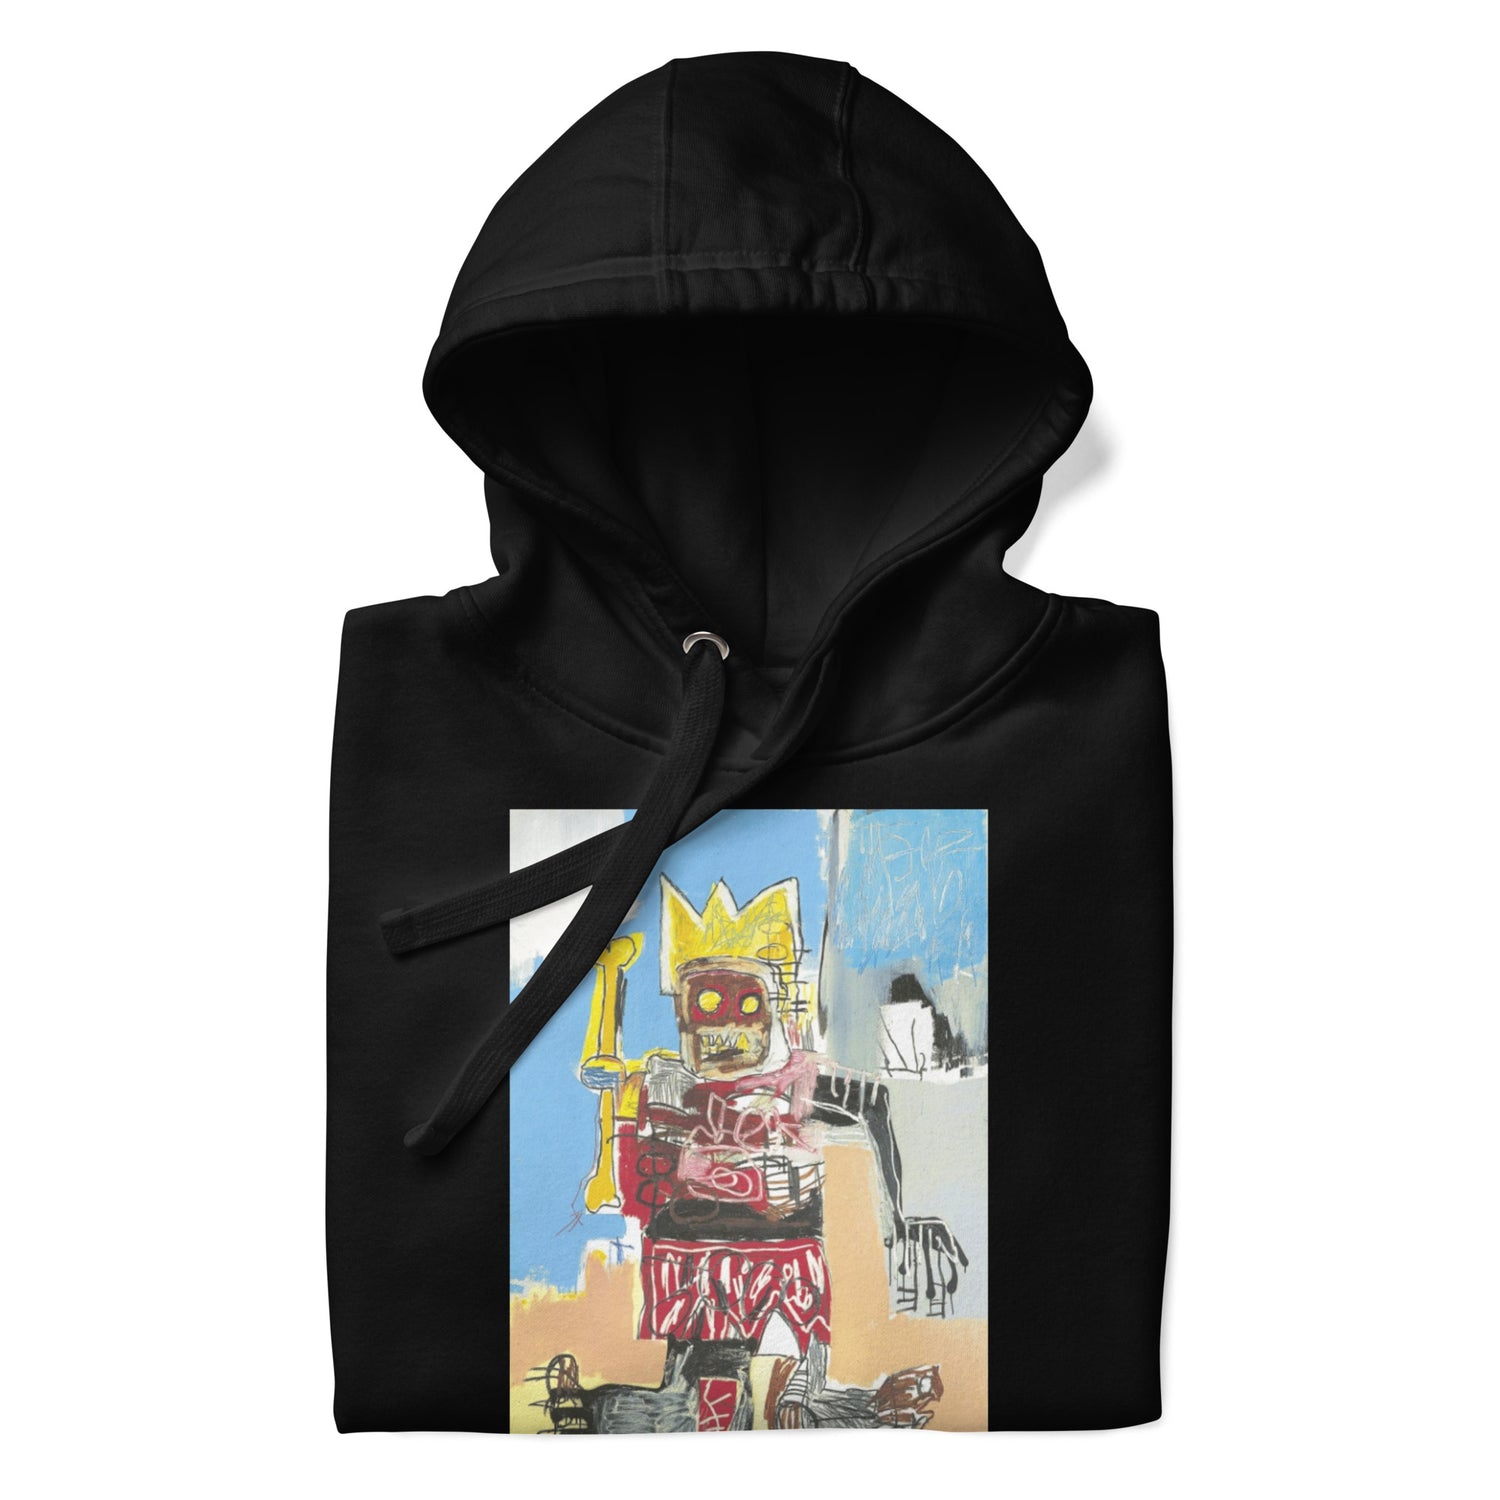 Jean-Michel Basquiat "Untitled" Artwork Printed Premium Streetwear Sweatshirt Hoodie Black